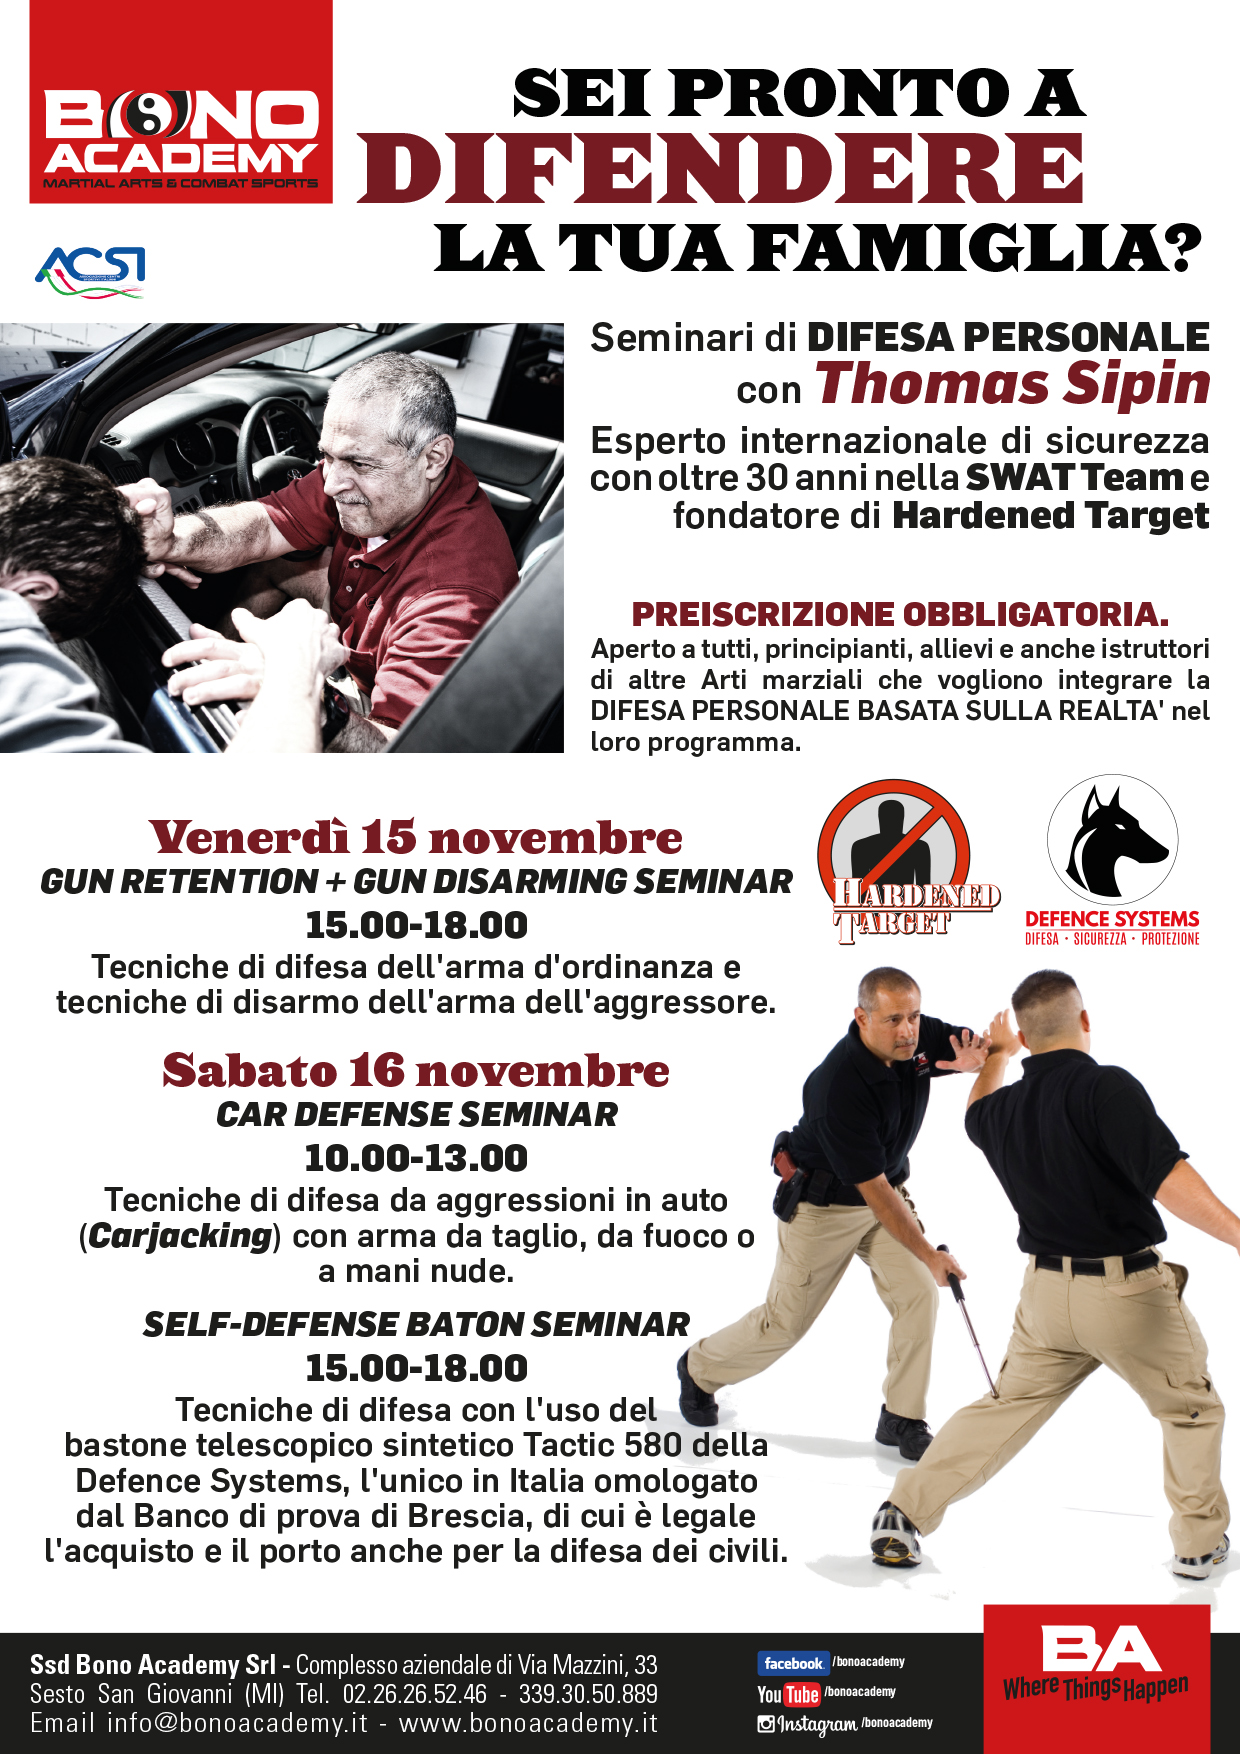 Volantino-Seminari-Sipin-15-16-novembre-2019